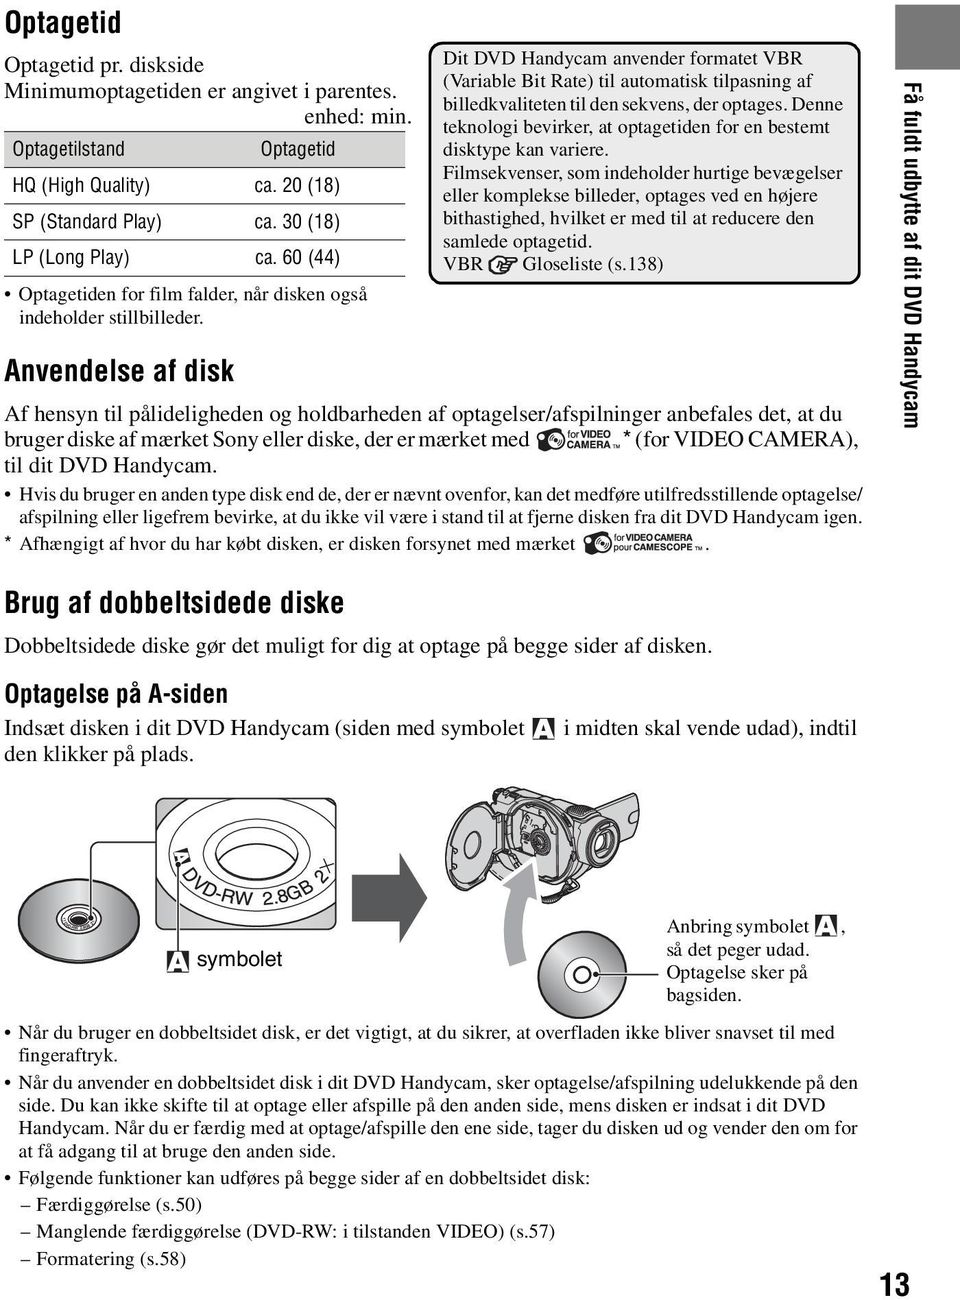 Anvendelse af disk Dit DVD Handycam anvender formatet VBR (Variable Bit Rate) til automatisk tilpasning af billedkvaliteten til den sekvens, der optages.